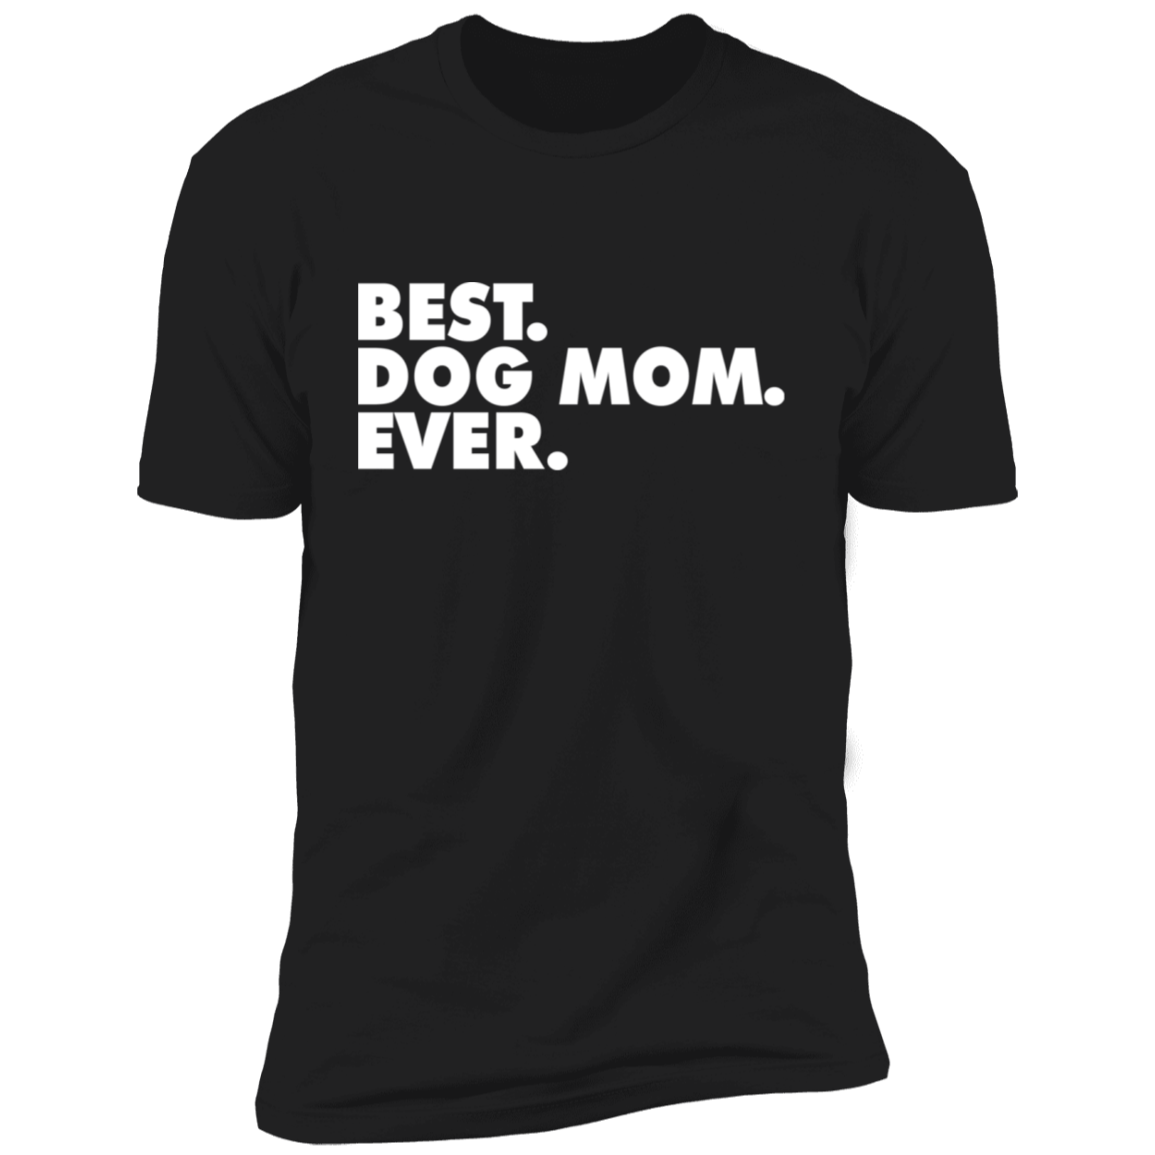 Best. Dog Mum. Ever.